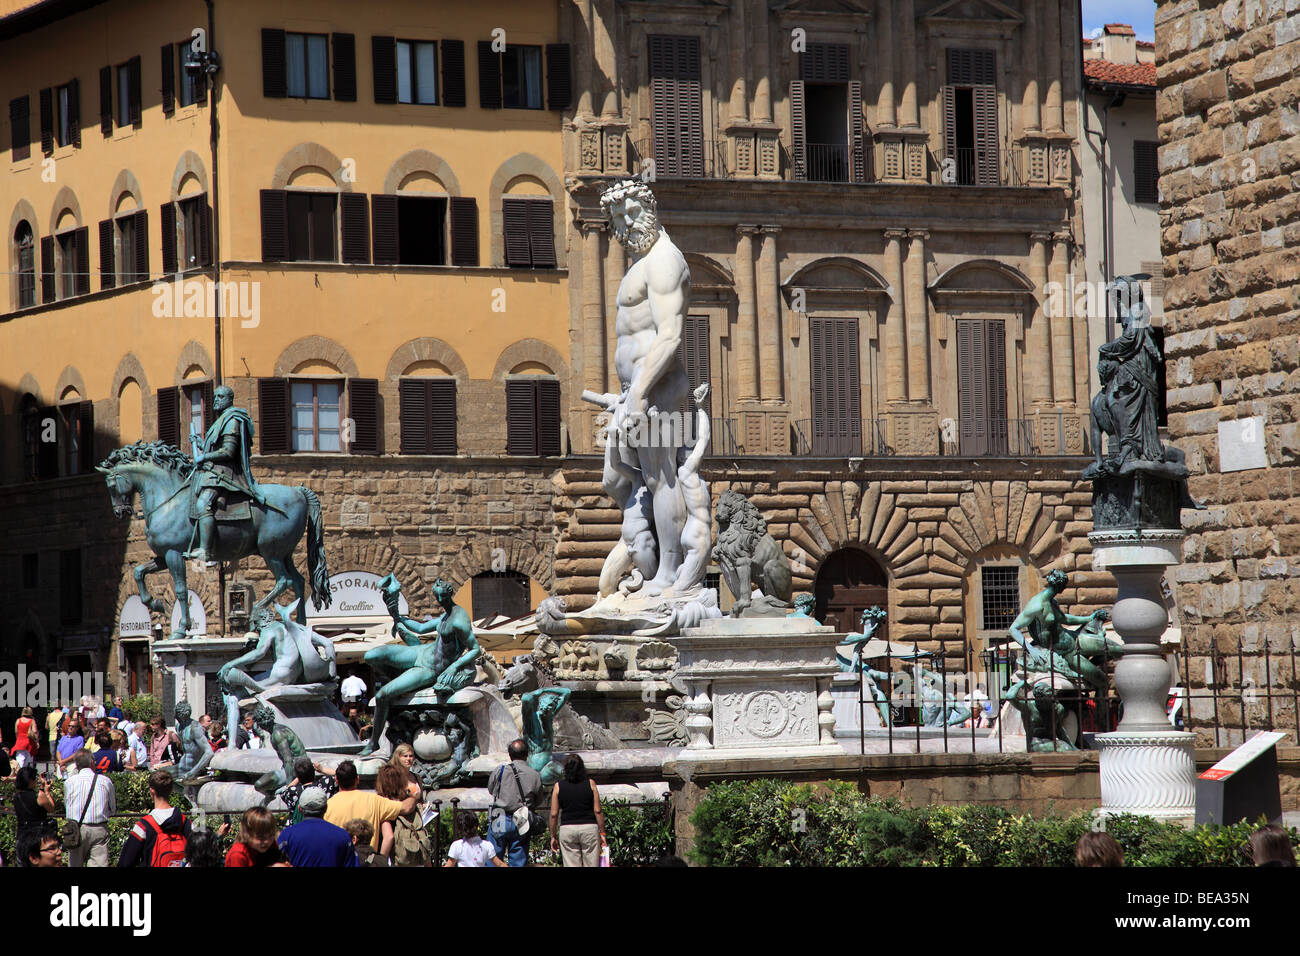 The equestrian statue of Cosimo I and Neptune's Fountain in Piazza della Signoria in Florence Italy Stock Photo